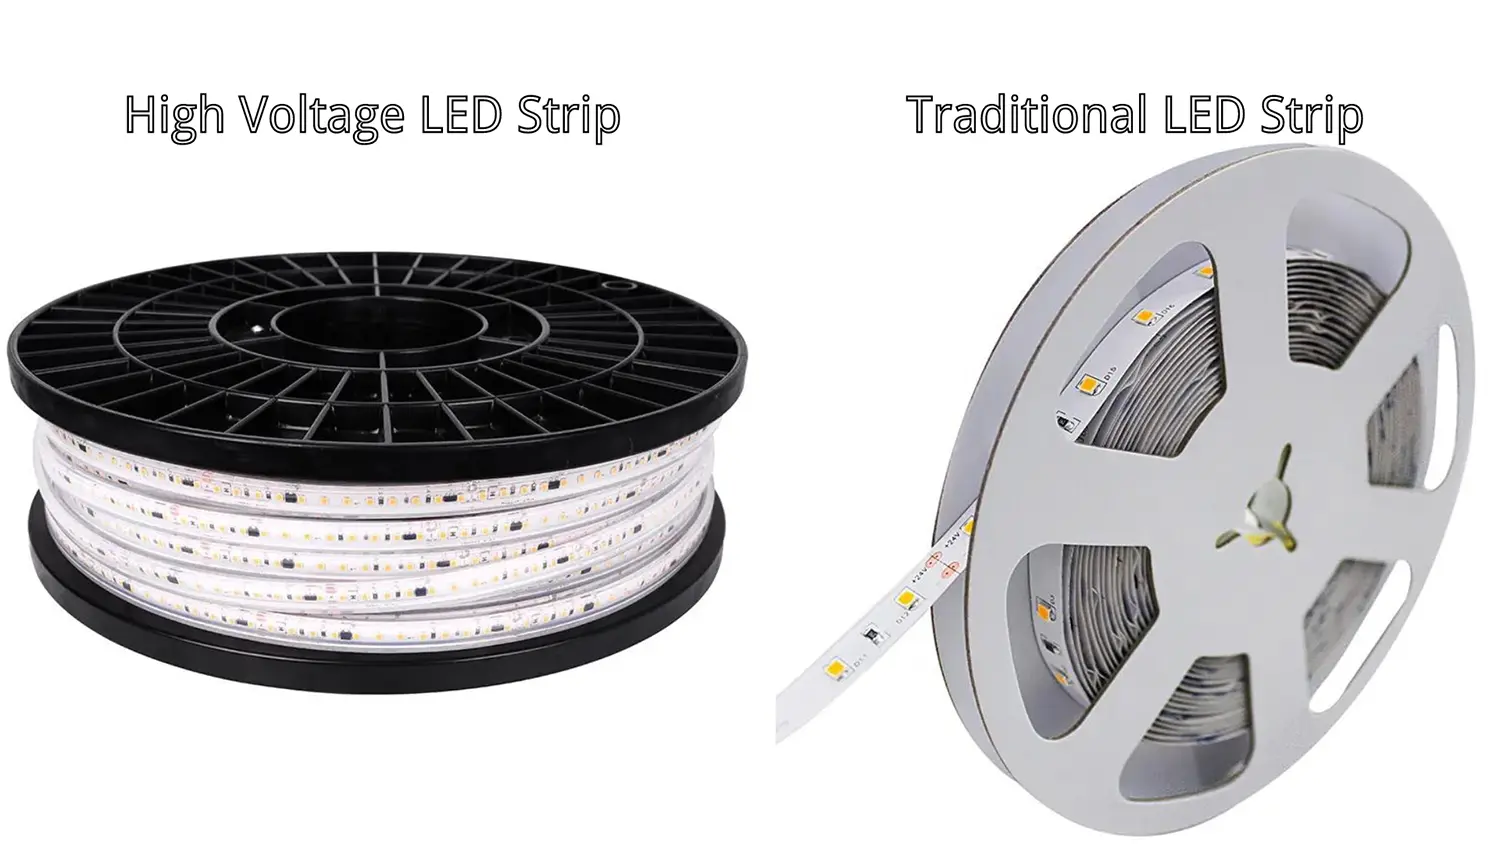 Hochspannungs-LED-Streifen vs. traditionelle LED-Streifen